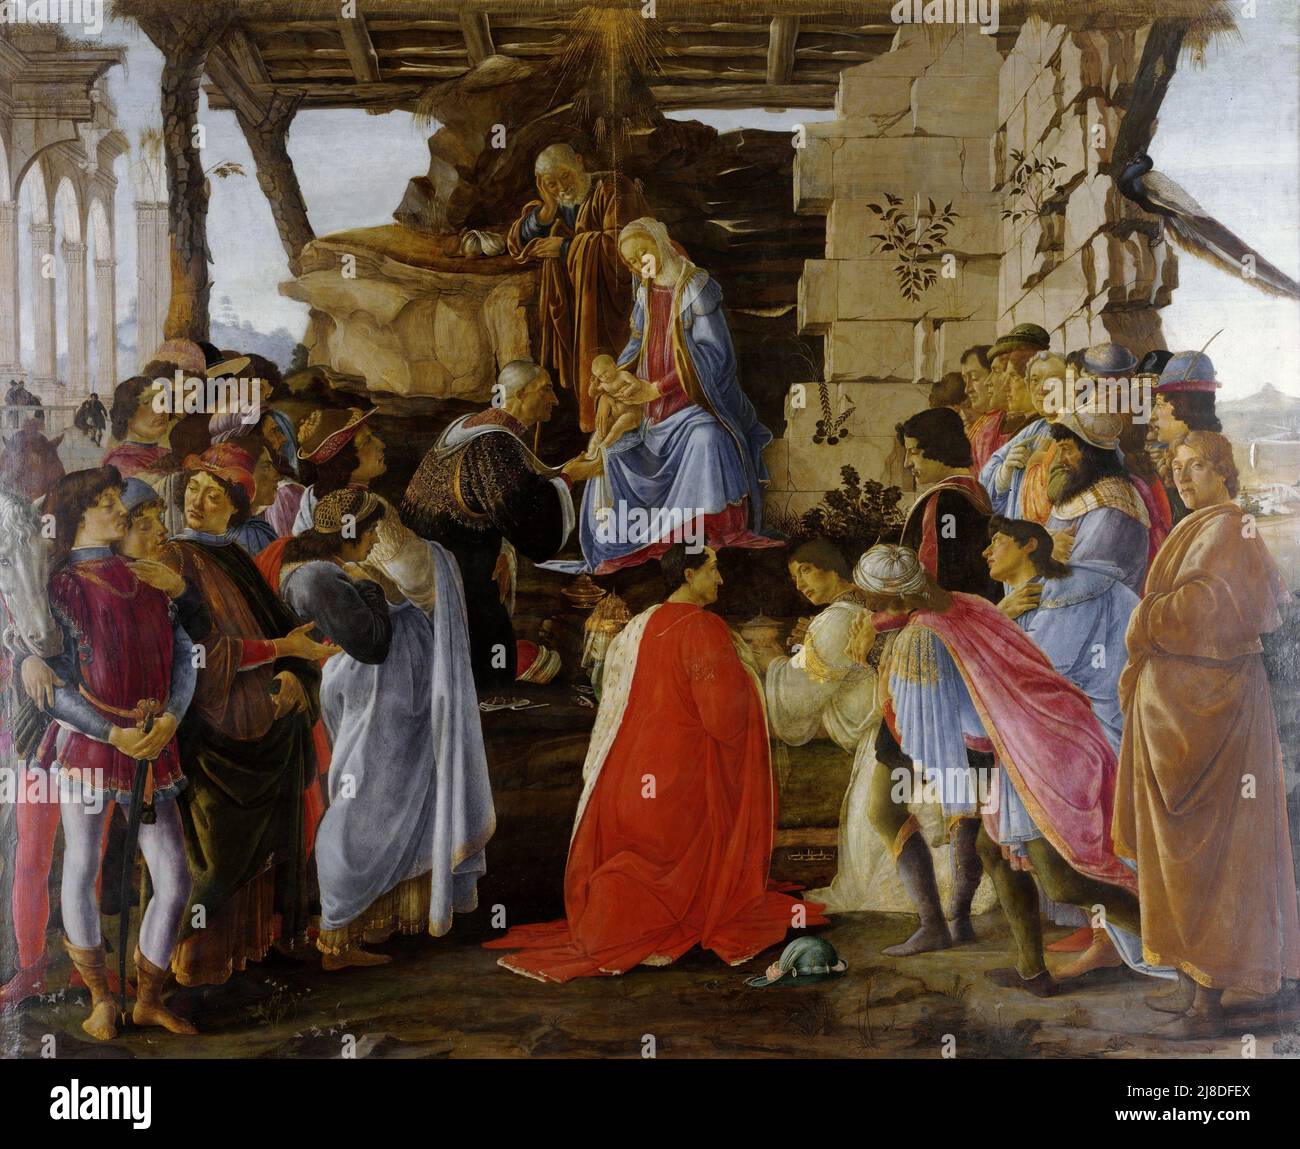 L'Adorazione dei Magi di Sandro Botticelli. In questo mito cristiano tre saggi uomini o re vengono a visitare il neonato gesù e lo riconoscono come messia e figlio di dio. Foto Stock